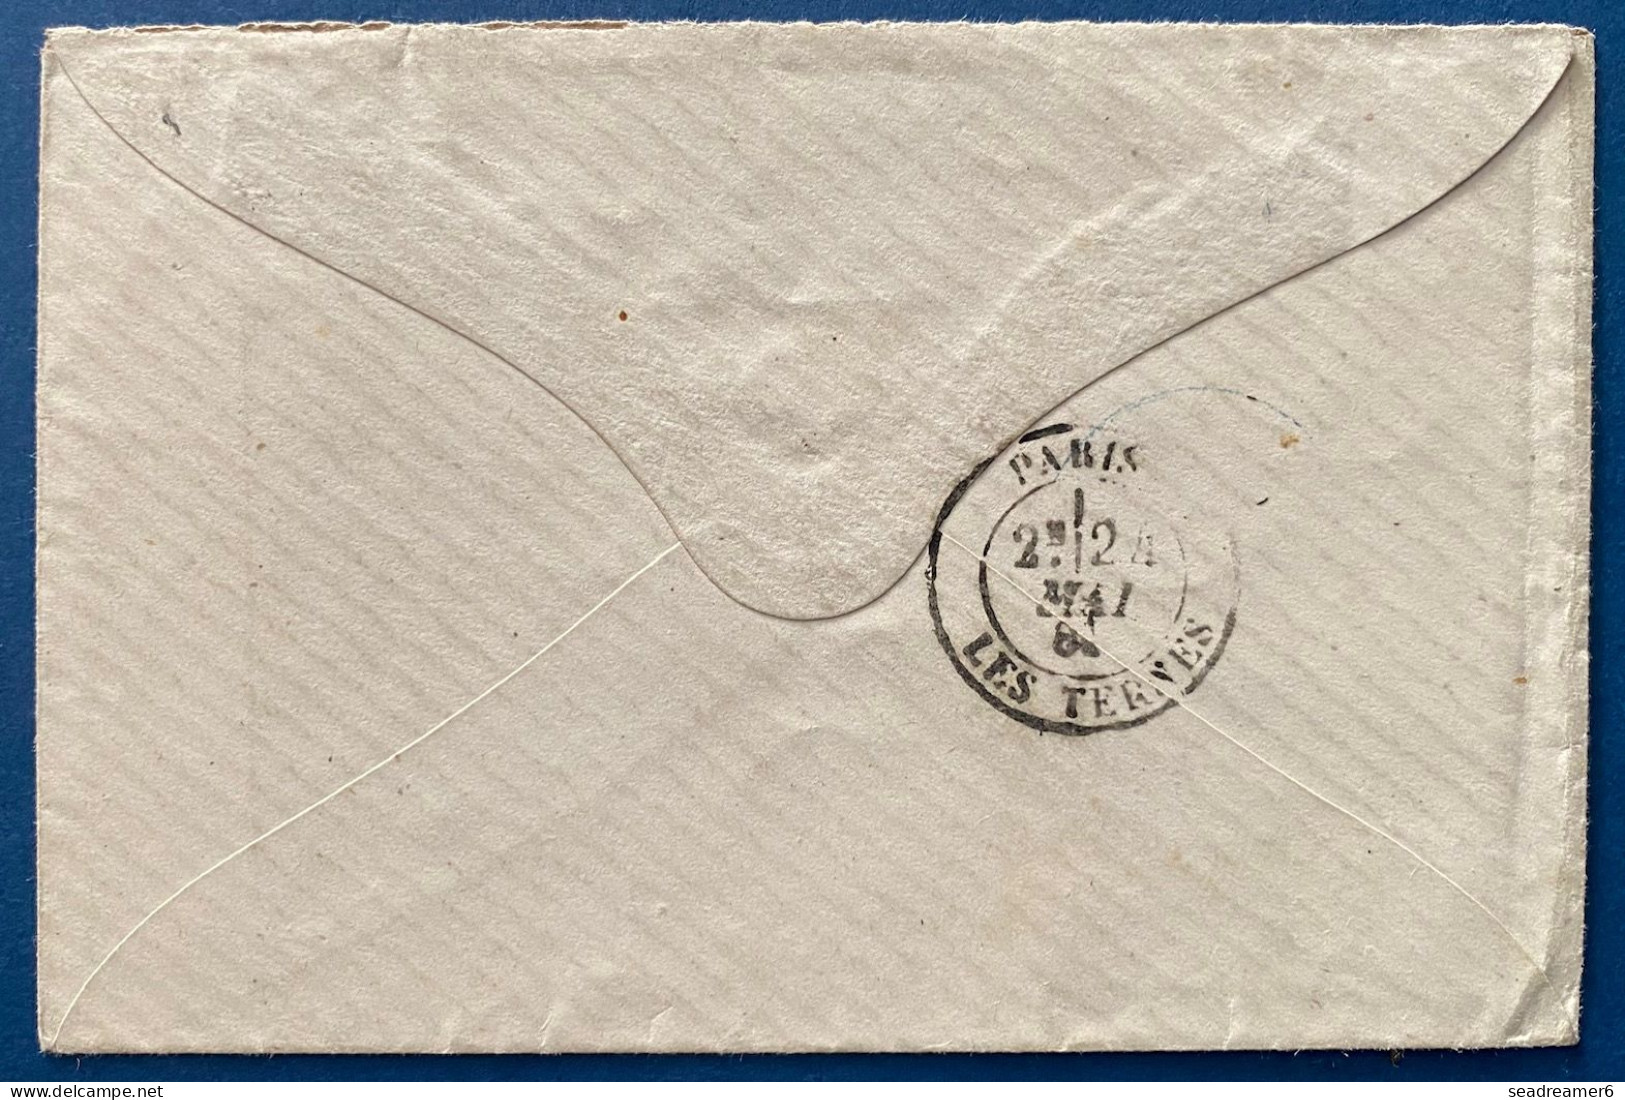 Lettre De 1881 N°44 25 C Jaune Bistre Oblitéré Dateur " GUADELOUPE/Pointe à Pitre " Pour PARIS TTB - Covers & Documents